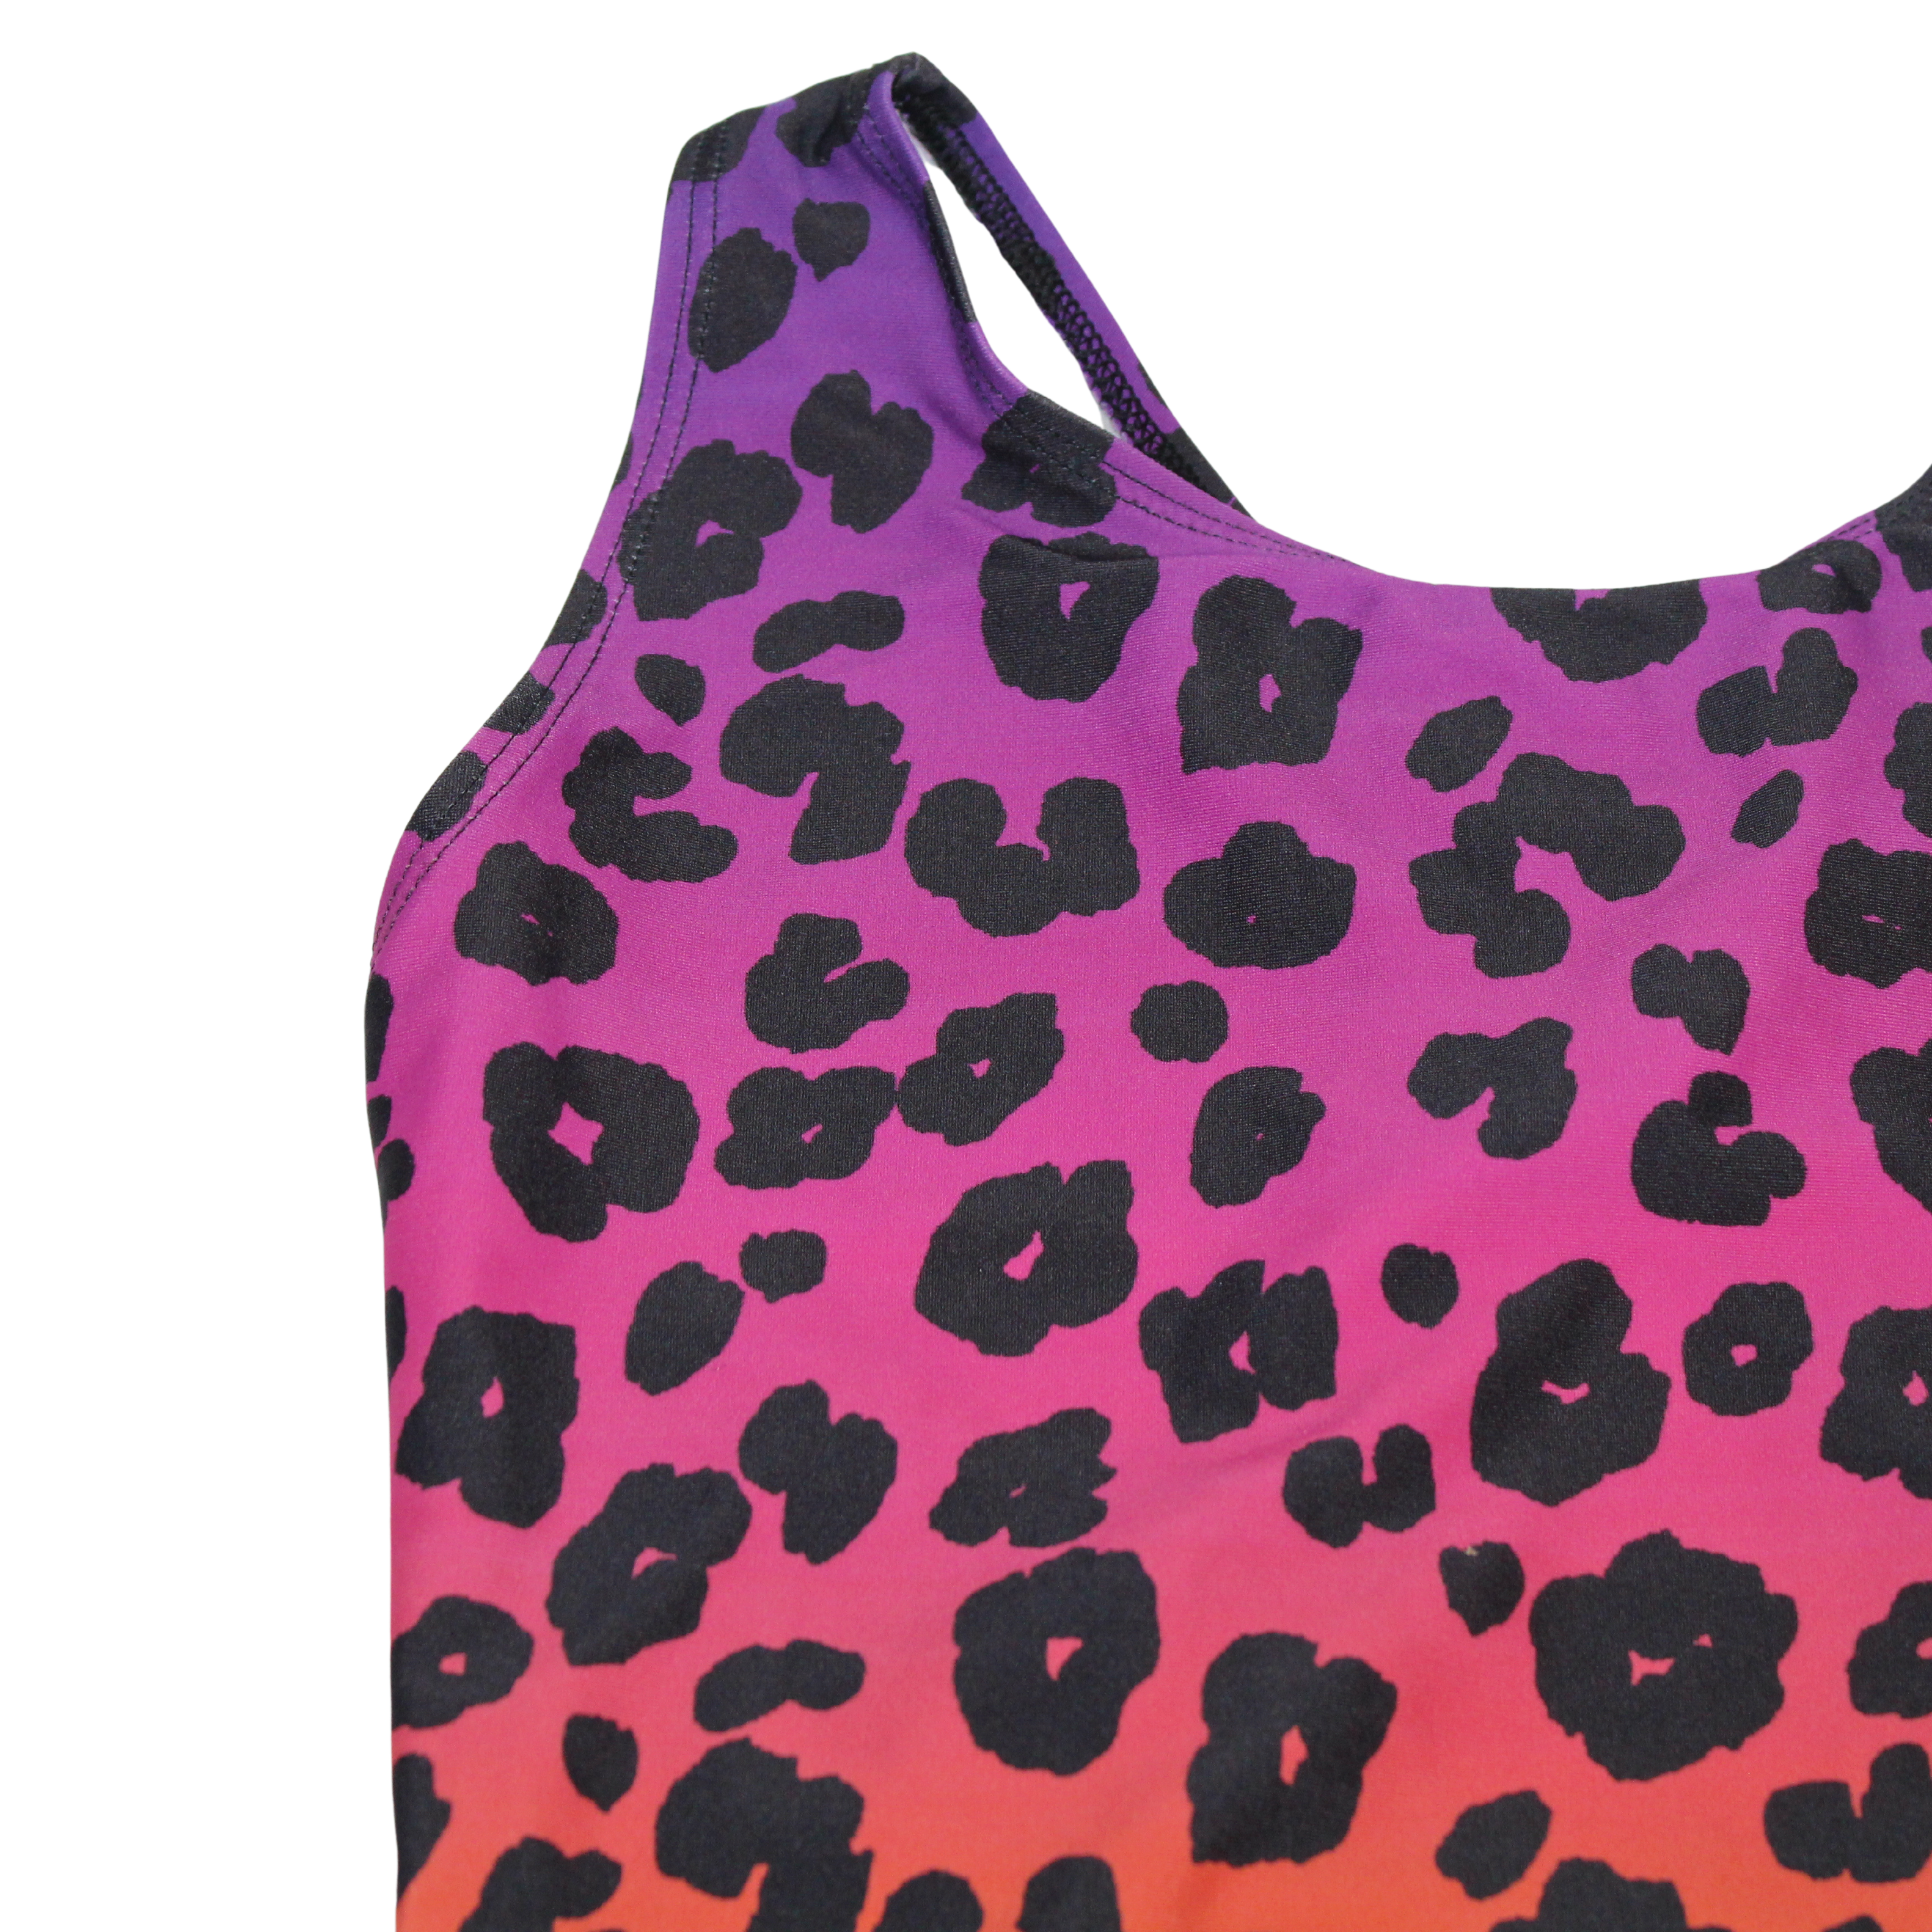 Multi Leopard Swimsuit